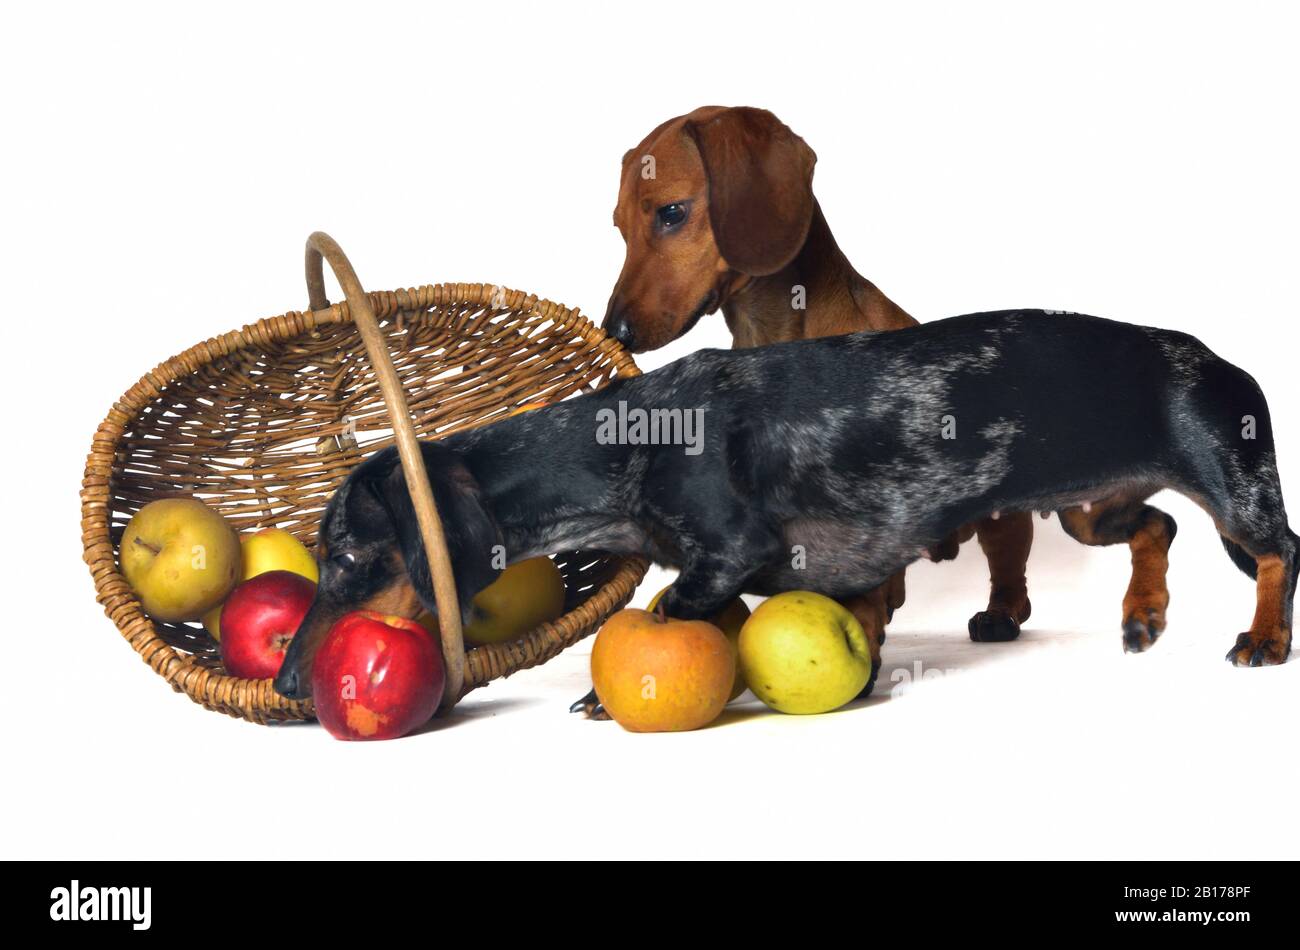 Kurzhaariger Dachshund, Kurzhaariger Wursthund, Haushund (Canis lupus f. familiaris), zwei Dachshunde, die kurioserweise in einen apfelkorb blicken Stockfoto